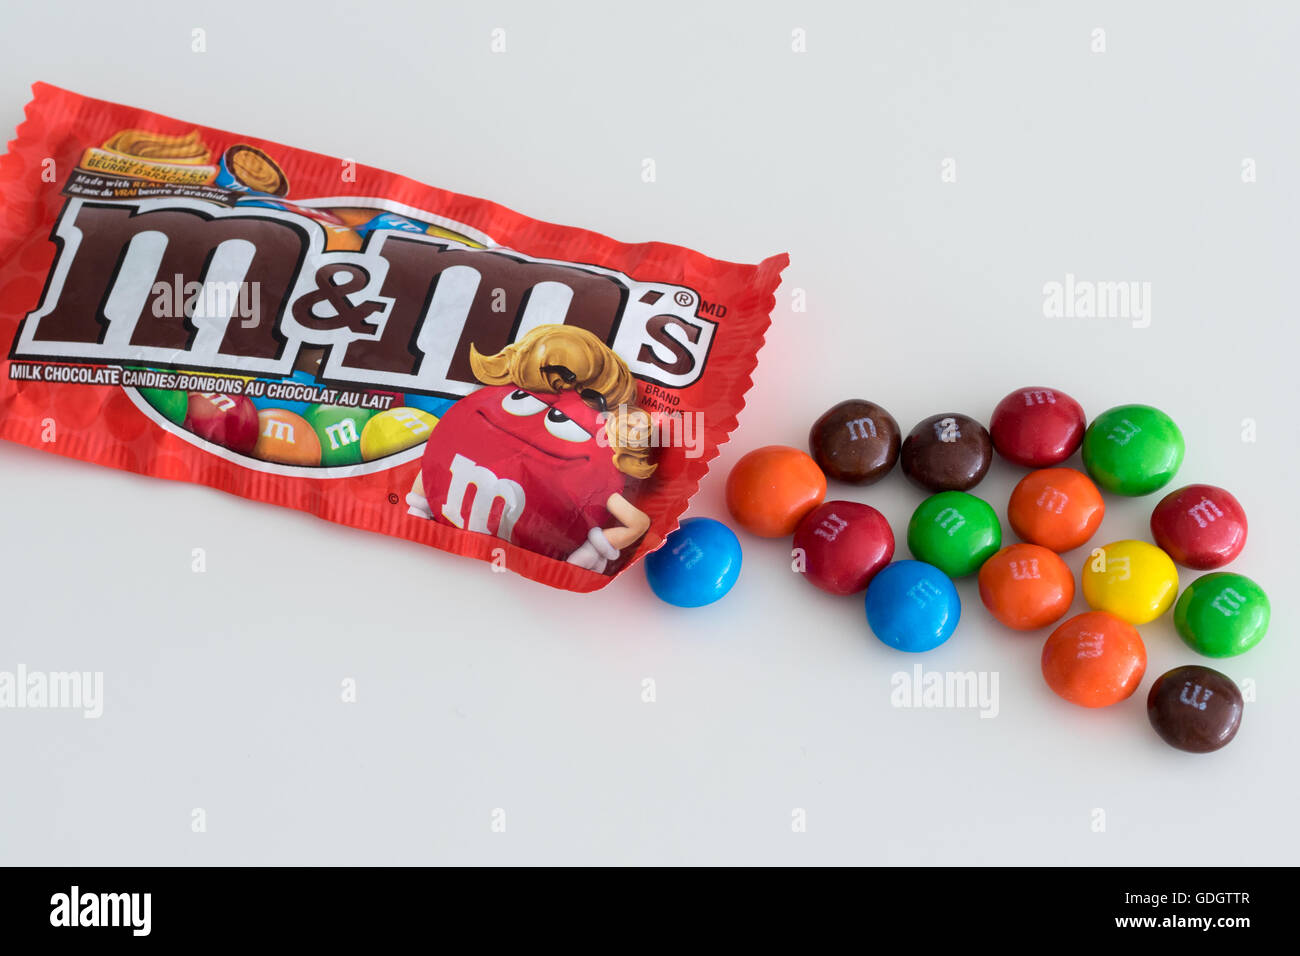 M&M'S M'S caramelos de chocolate con leche y cacahuete 330g